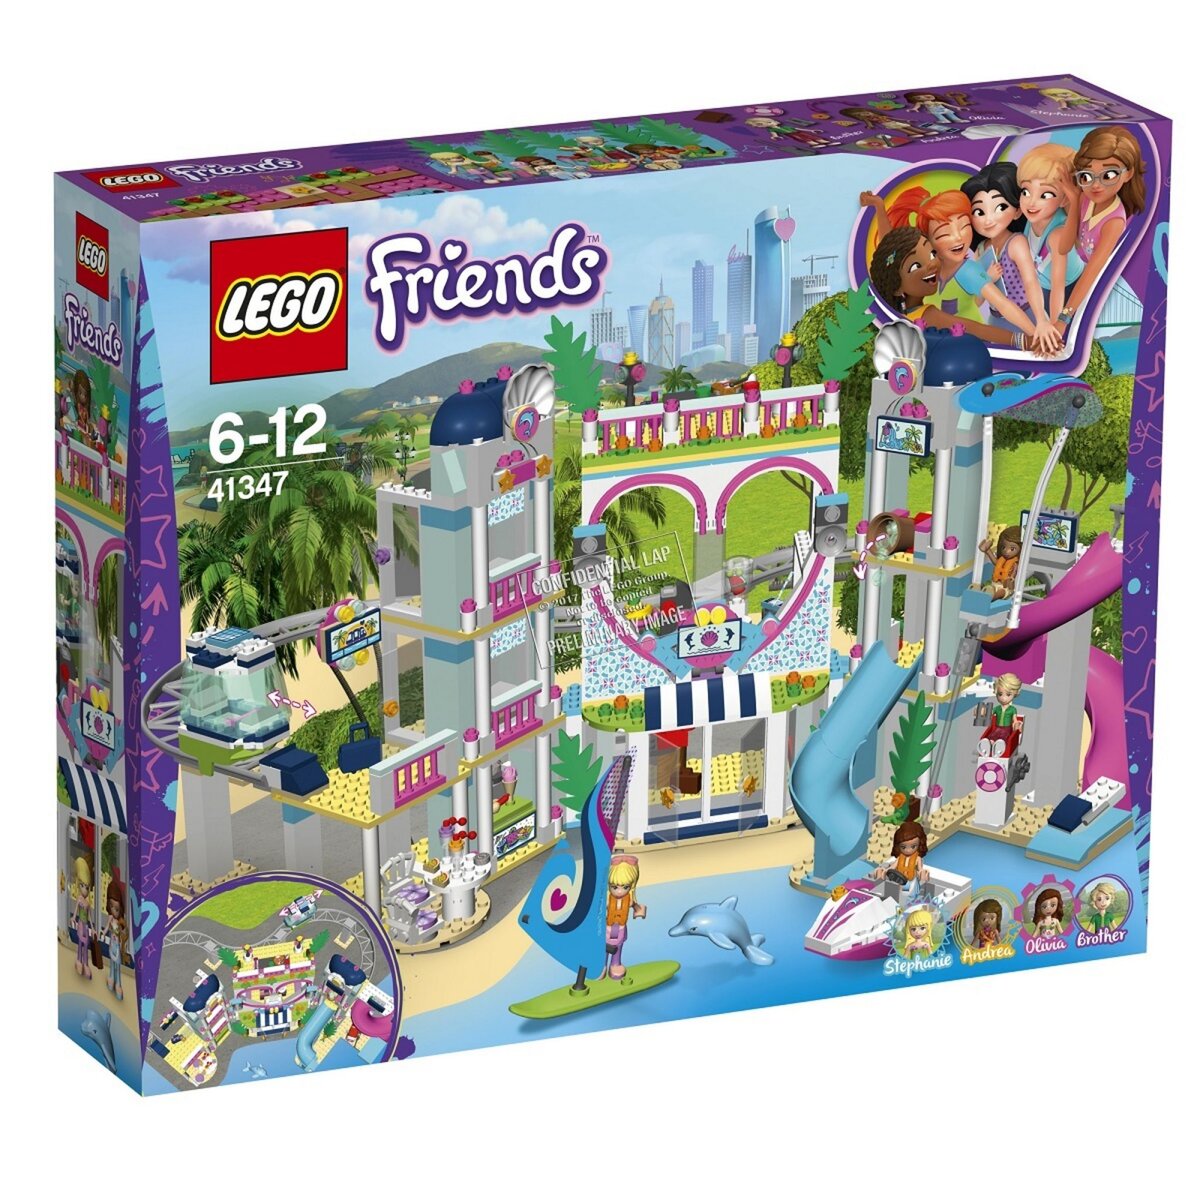 LEGO Friends 41347 - Le complexe touristique d'Heartlake City 